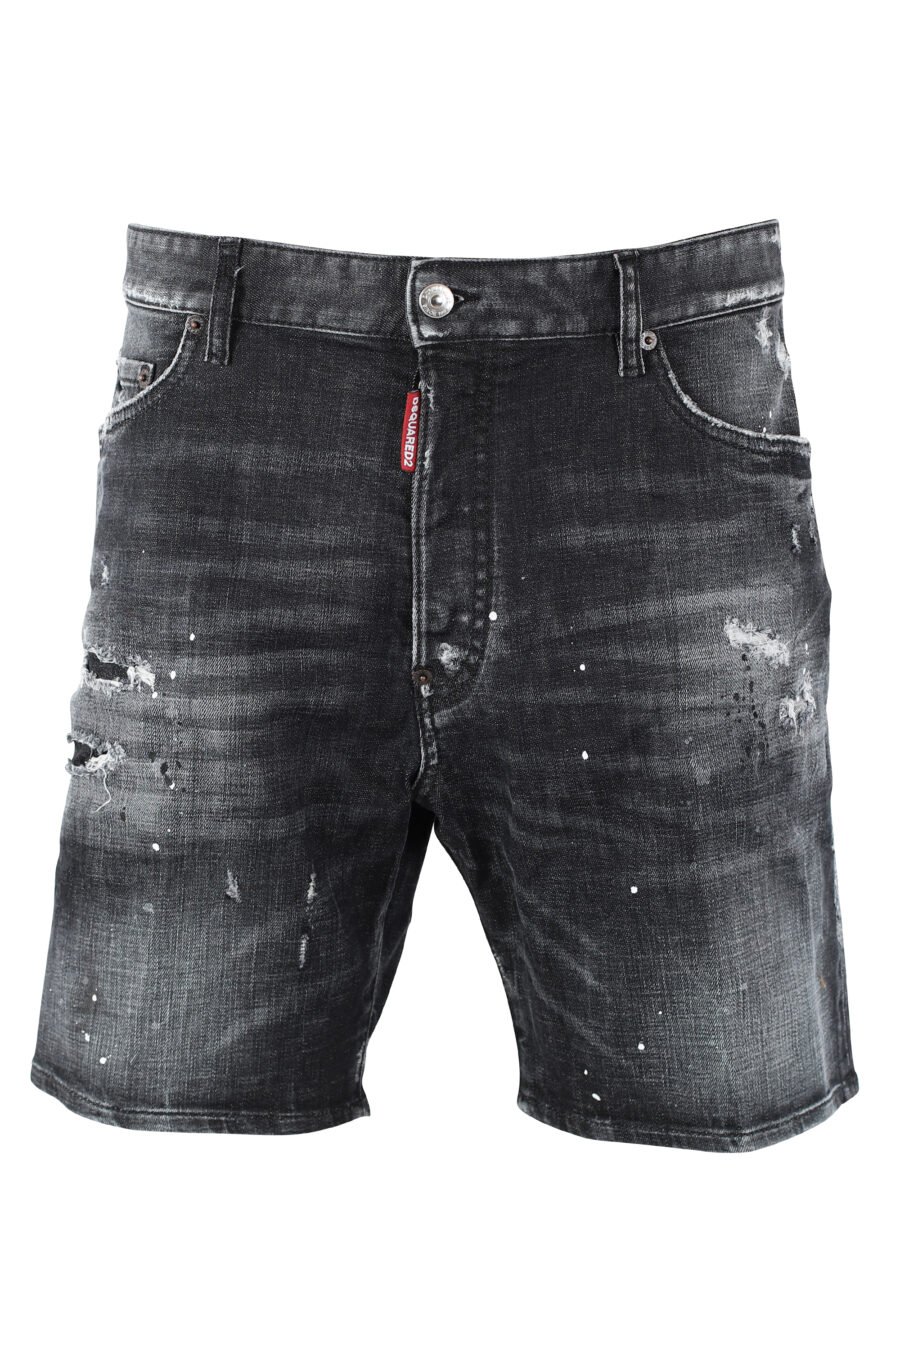 Marine Denim Shorts schwarz getragene Denim Shorts mit Rissen - IMG 9728